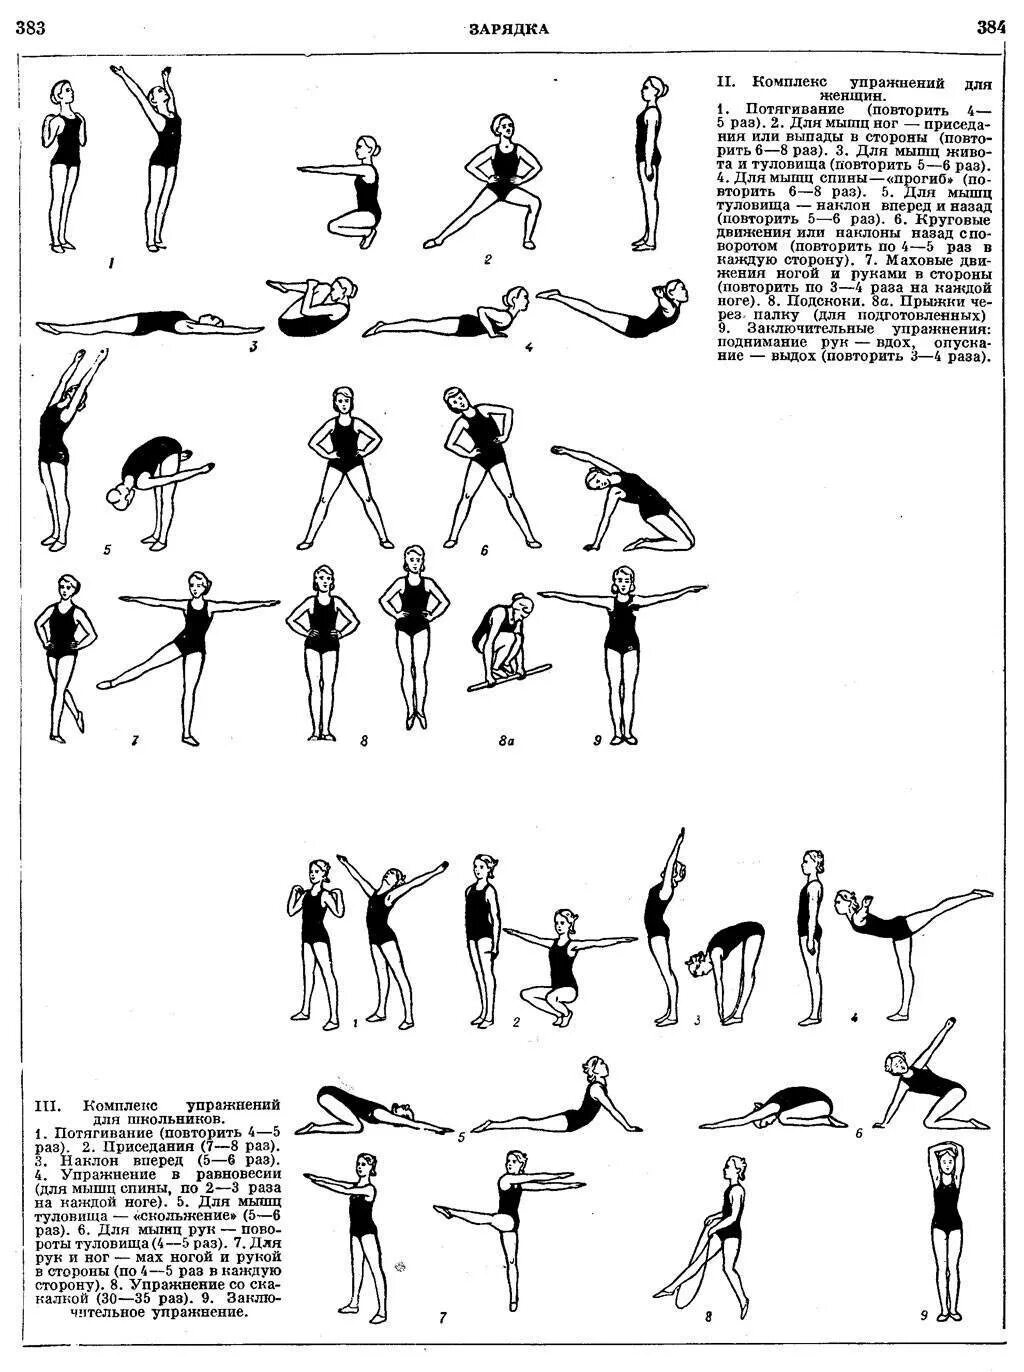 Какие зарядки делать дома. Комплекс упражнений утренней гимнастики для женщин. Комплекс упражнений утренней зарядки таблица. Комплекс упражнений для утренней зарядки для женщин. Утренняя гимнастика СССР комплекс упражнений.